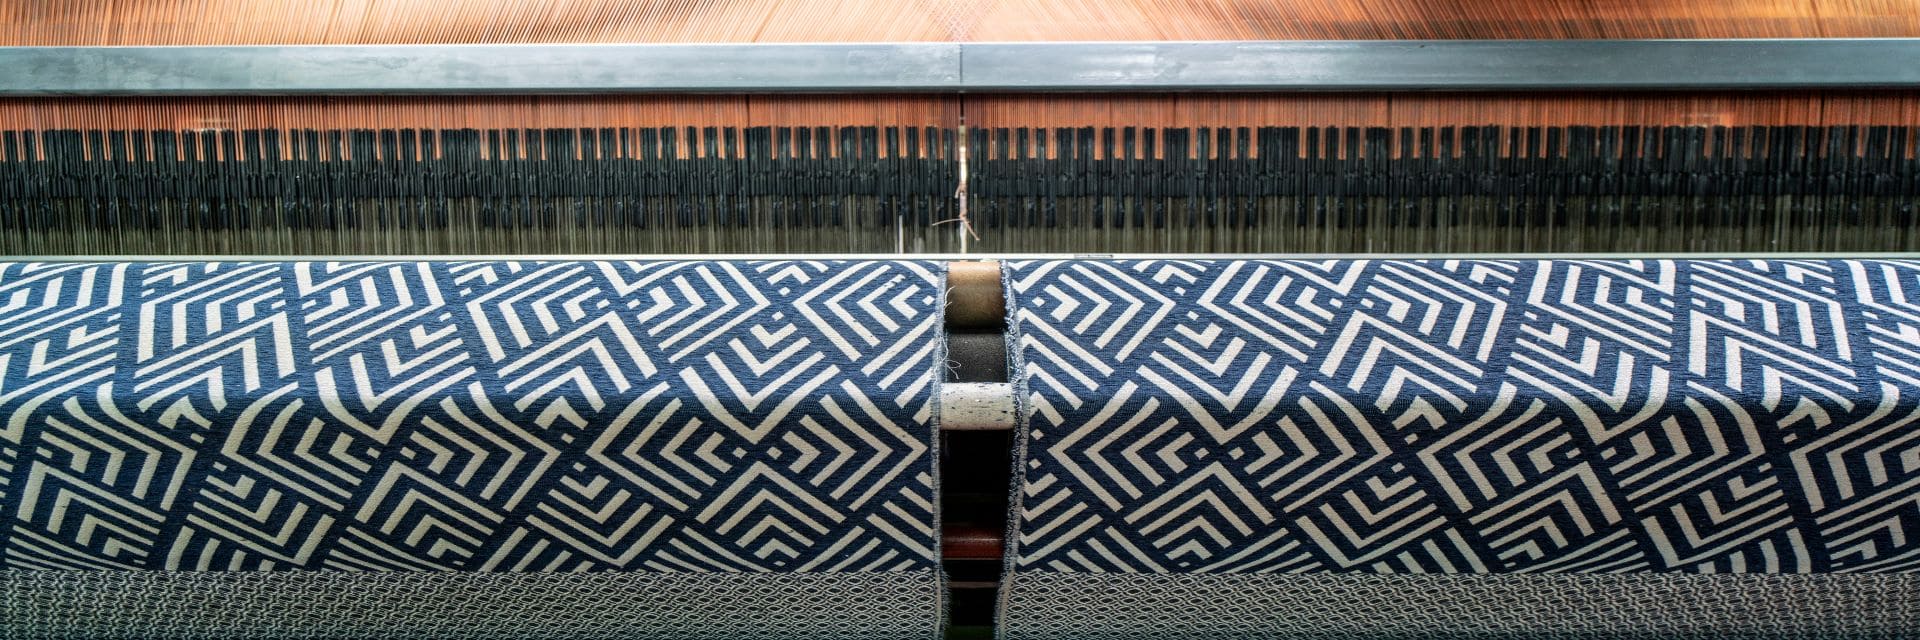 telar de fabrica tejiendo una tela jackard geometrica en tono azul y blanco